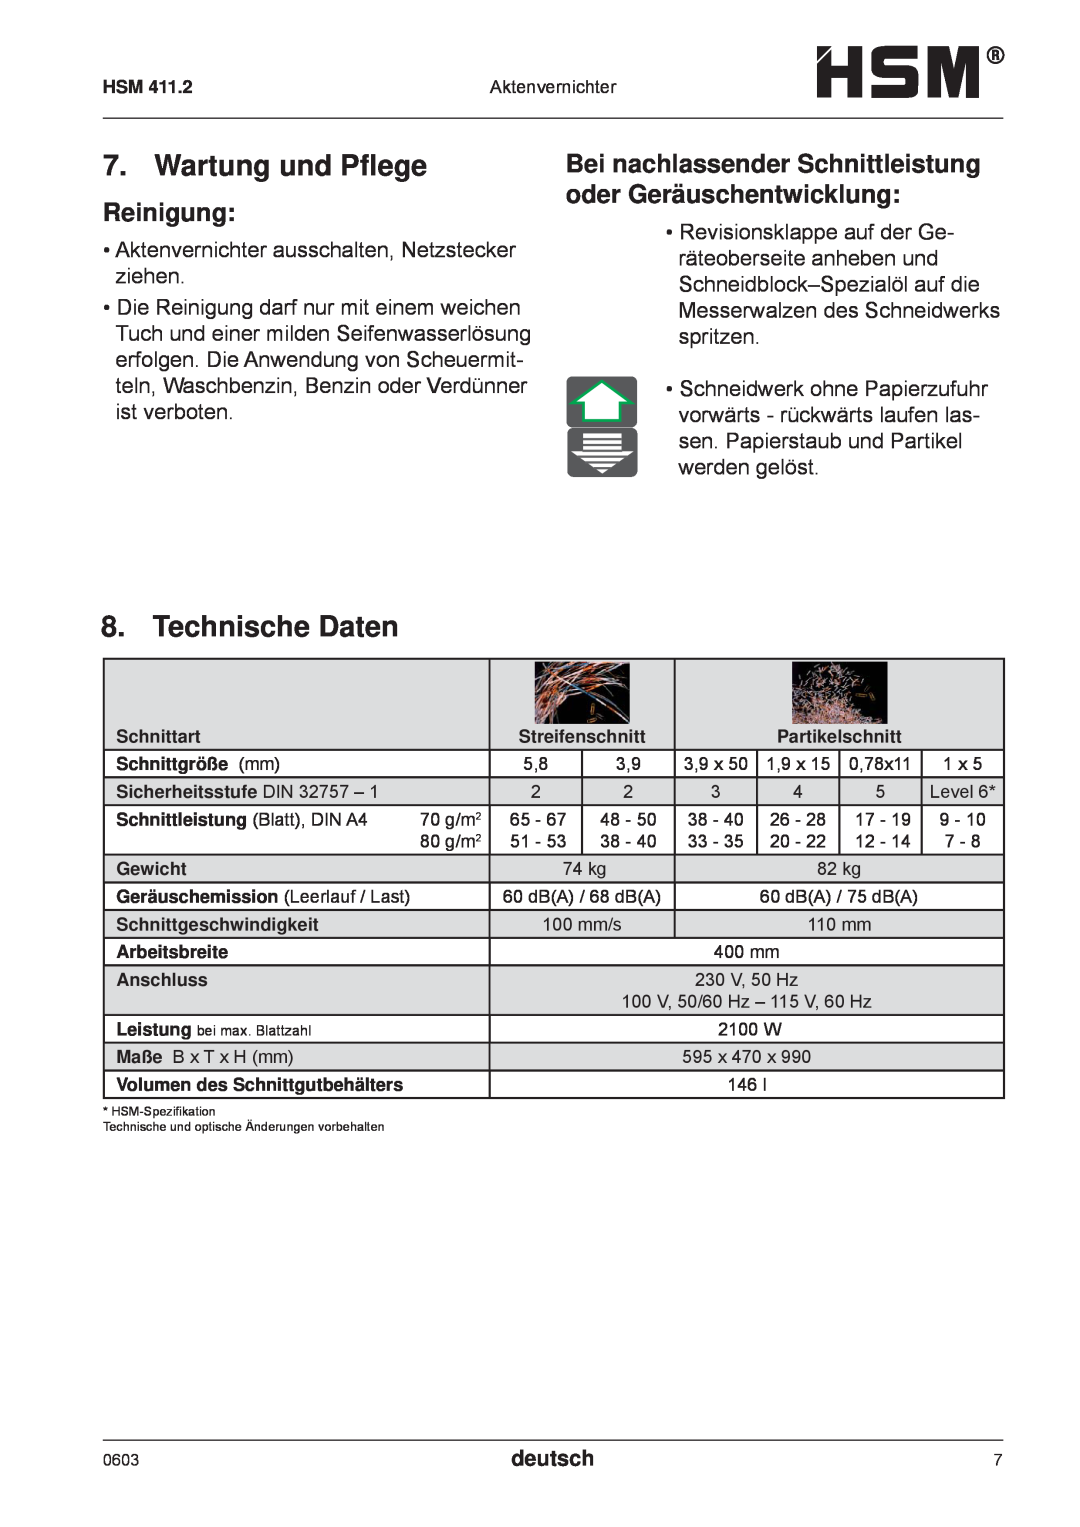 HSM HSM 411.2 Wartung und Pﬂege, Technische Daten, Reinigung, Bei nachlassender Schnittleistung oder Geräuschentwicklung 